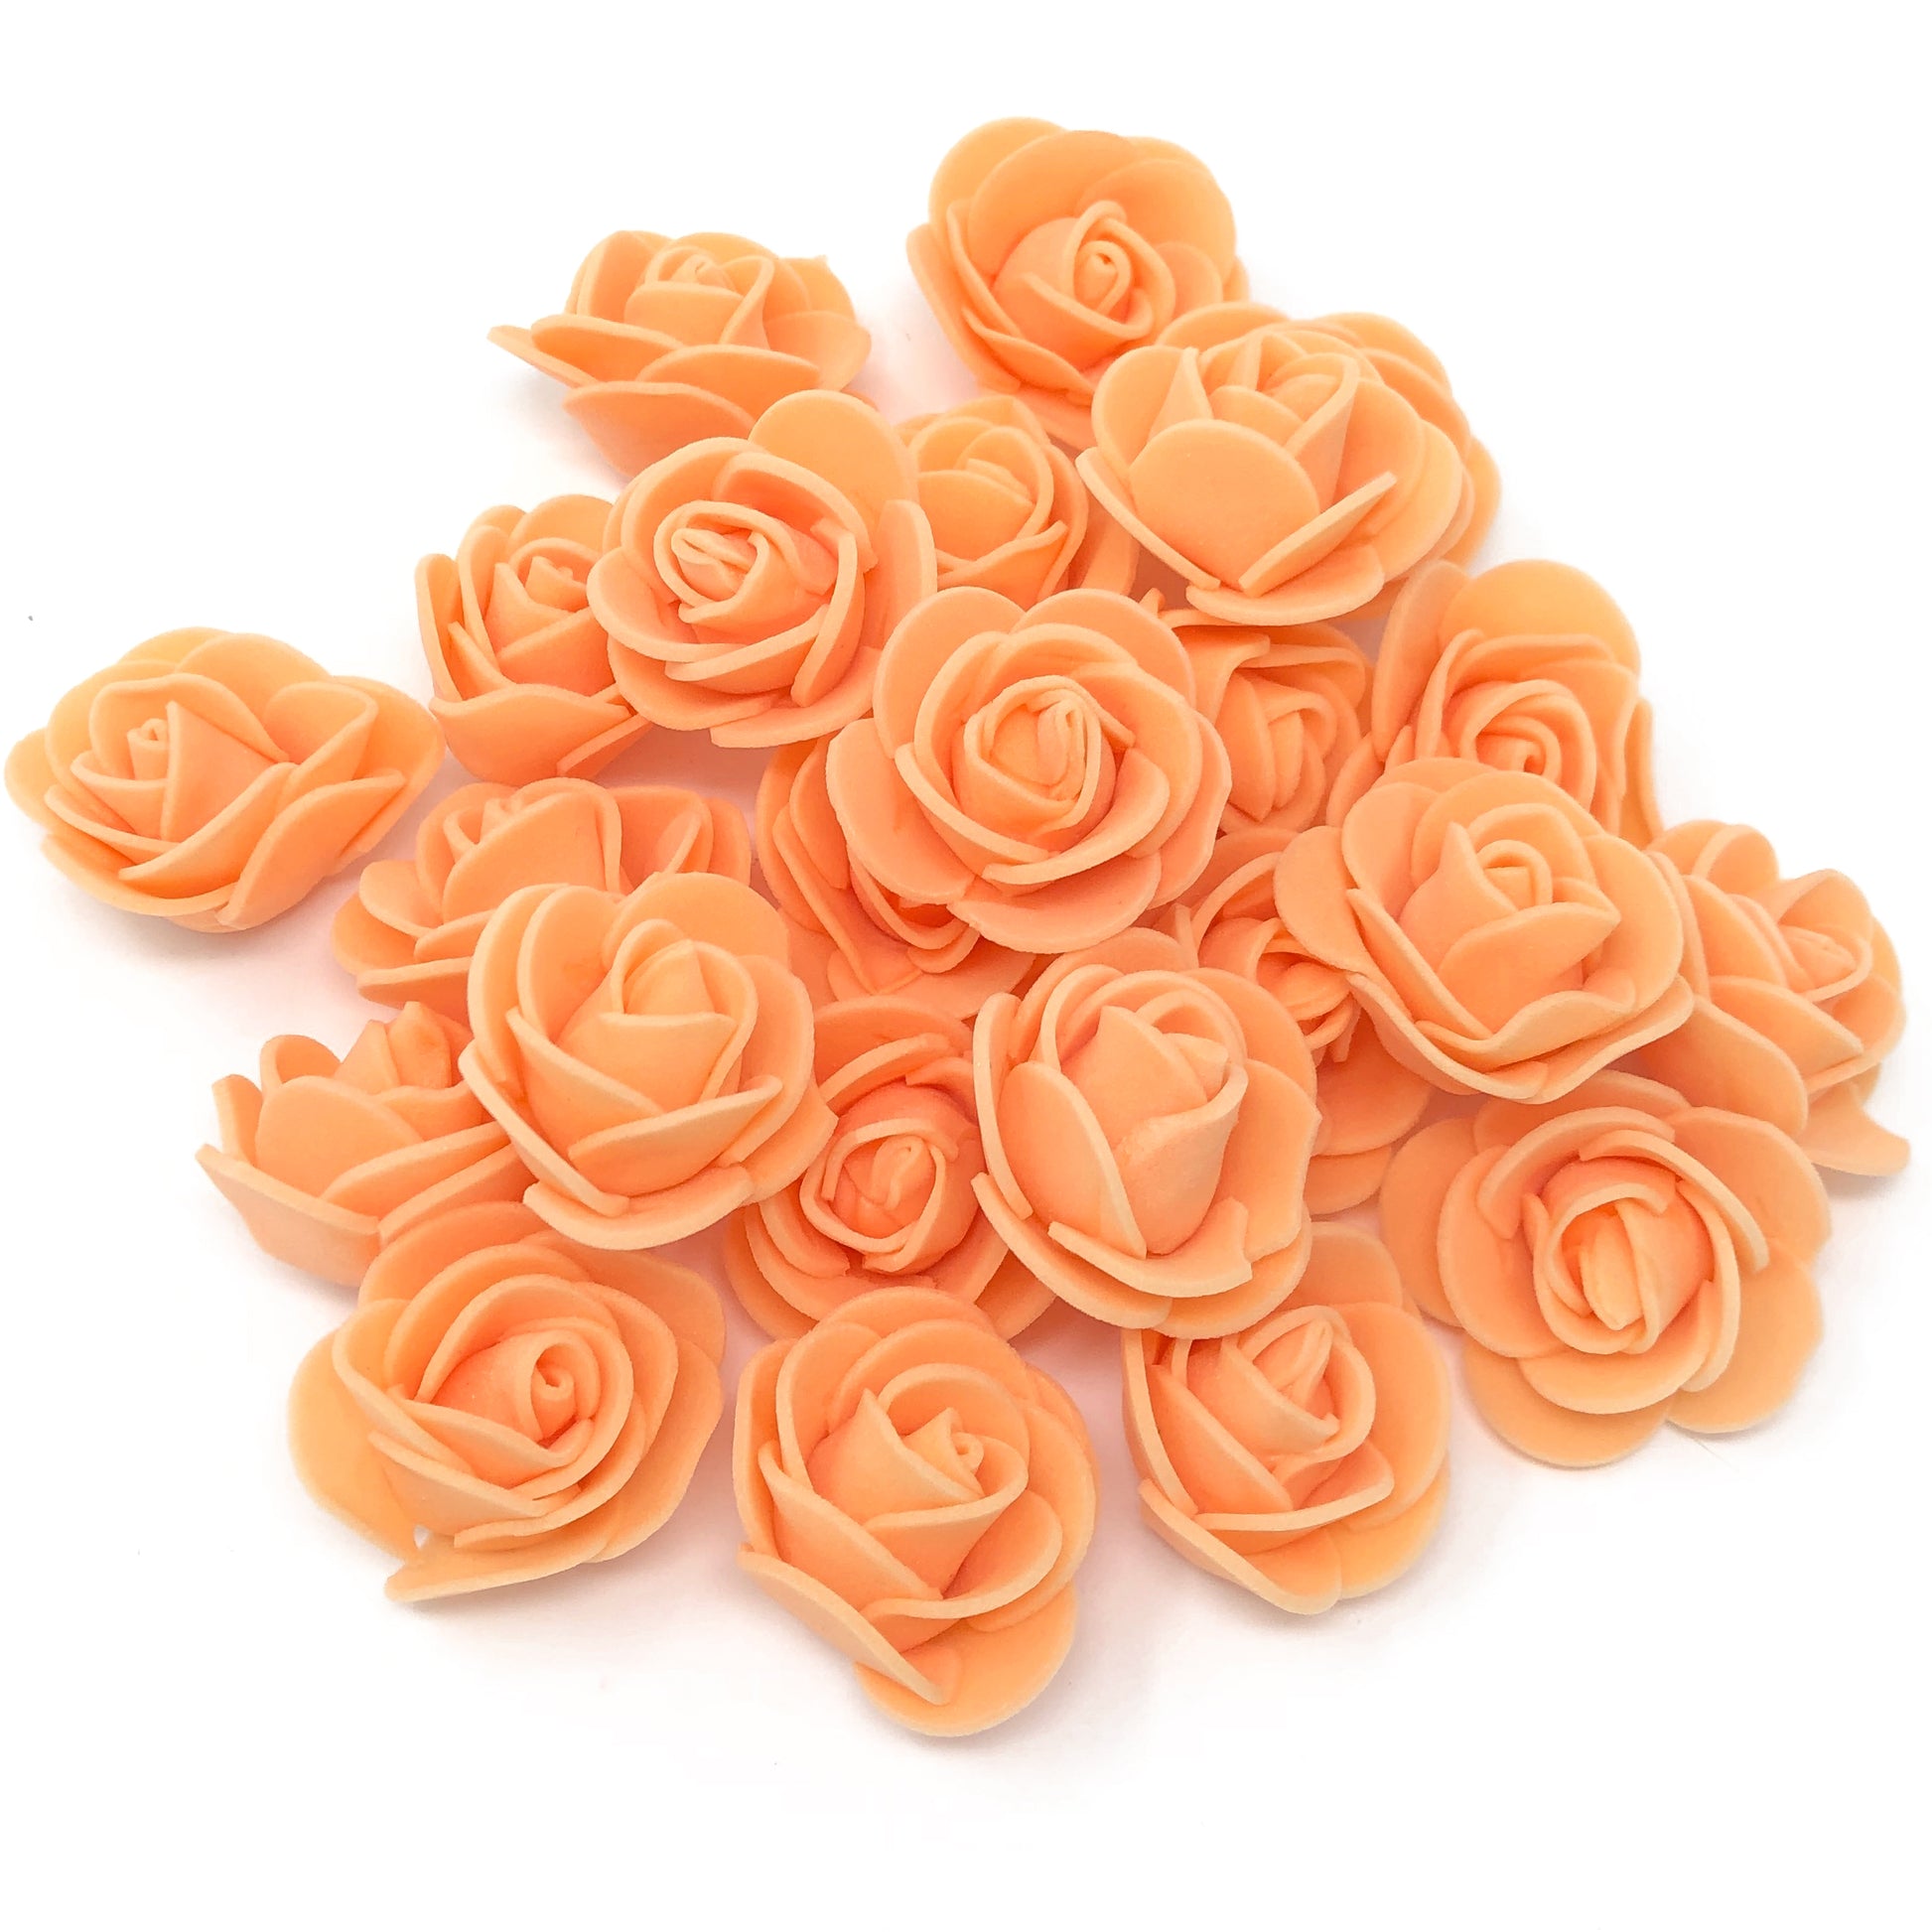 Orange 30mm Foam Rose Flowers